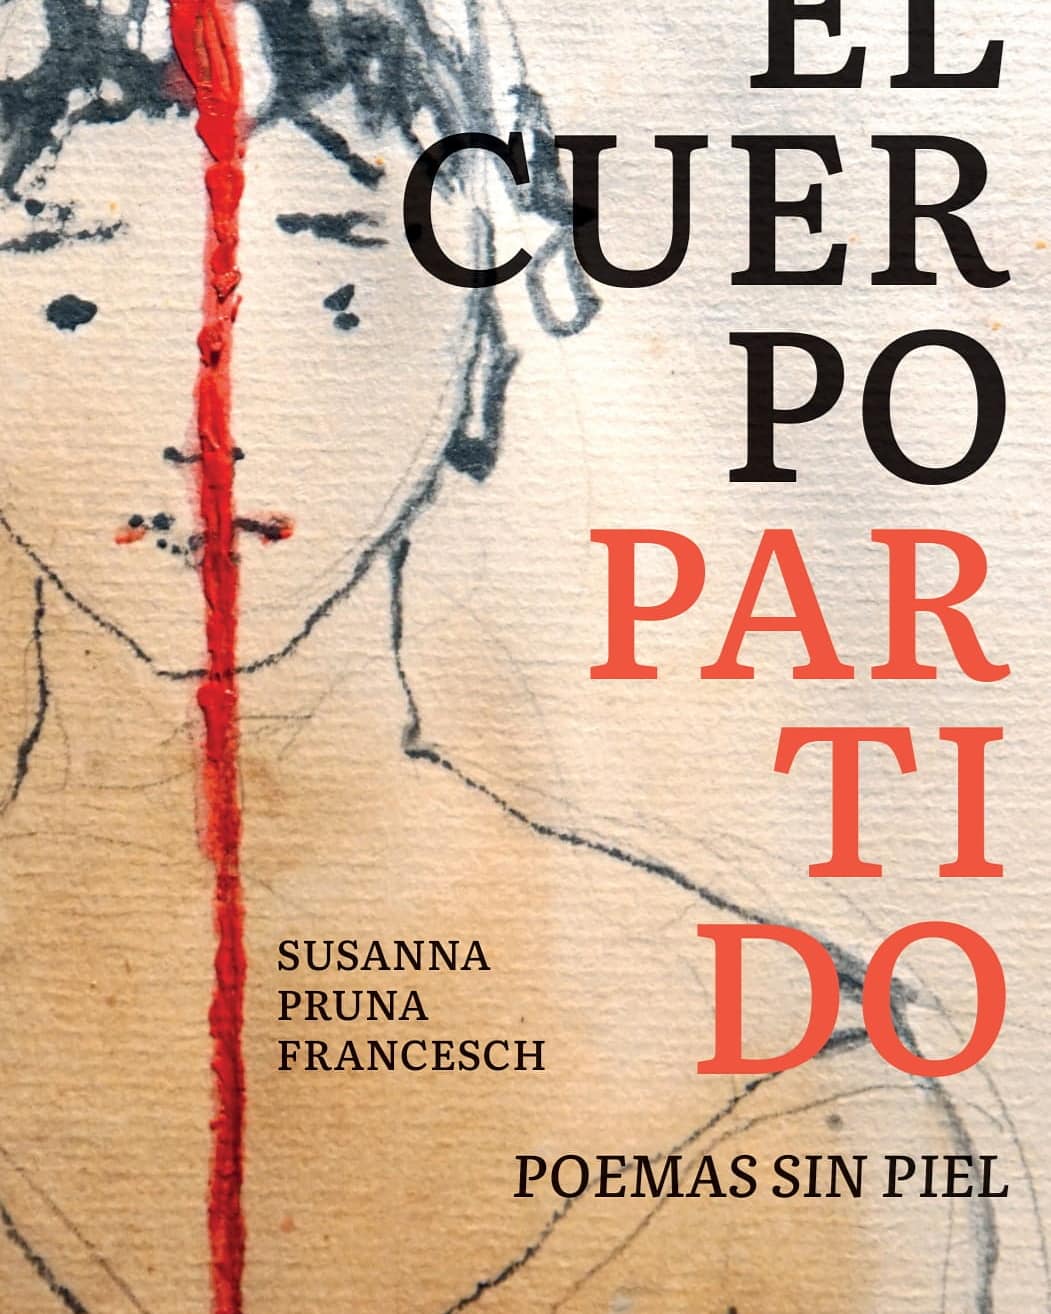 Información de la presentación del libro El cuerpo partido. Poemas sin piel, de Susanna Pruna